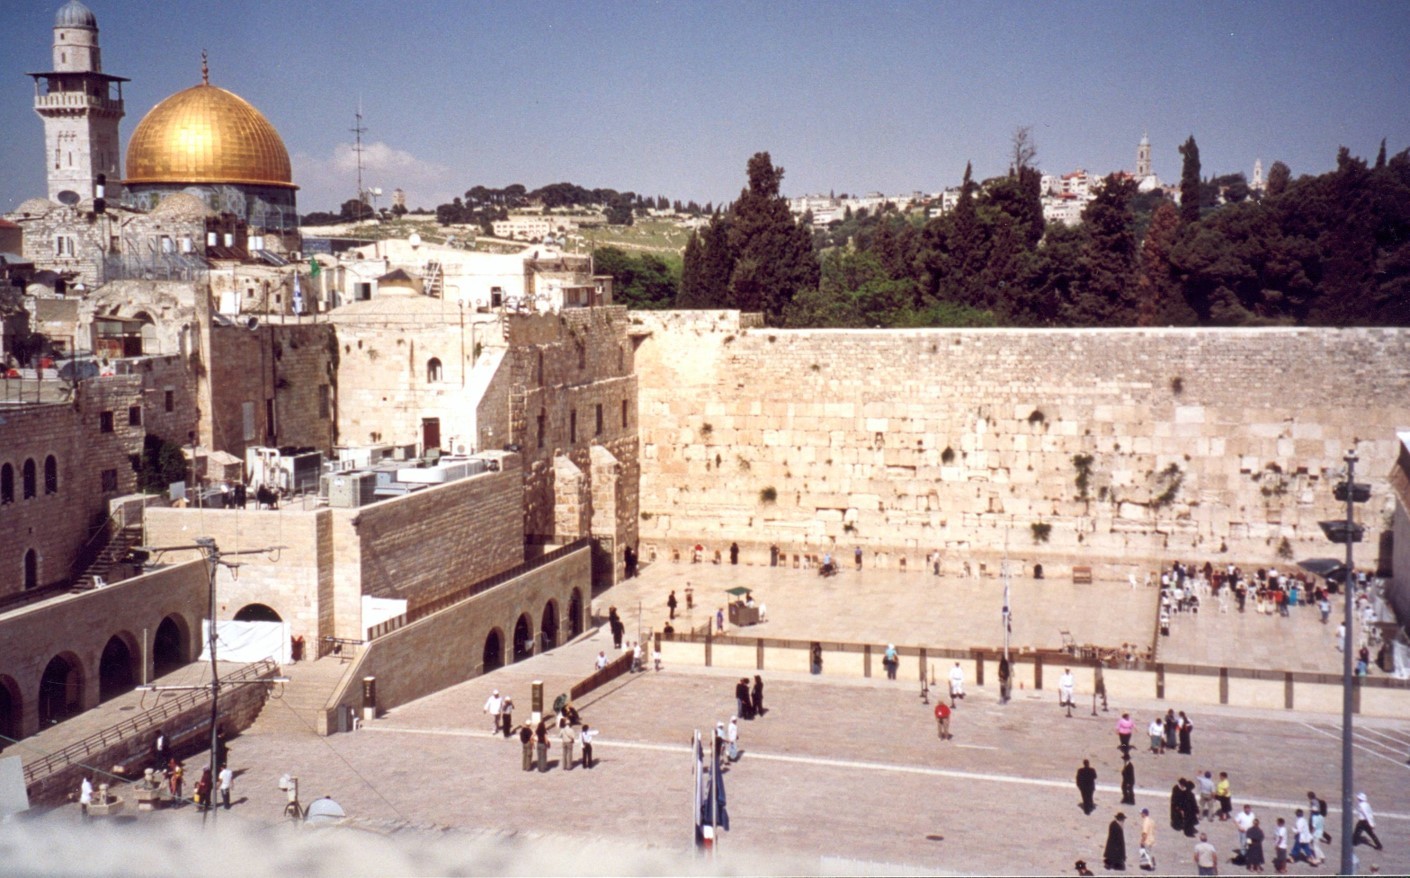 C'est à Jérualem que Jésus est mort et ressuscité. Jérusalem est aussi appelée « le mont Sion », le Temple en étant le symbole construit sur ce monticule. Celui-ci ayant été détruit, il ne reste que le Mur des Lamentations vénéré par tous les Juifs, et c'est la mosquée d'Omar qui se situe à cet endroit.